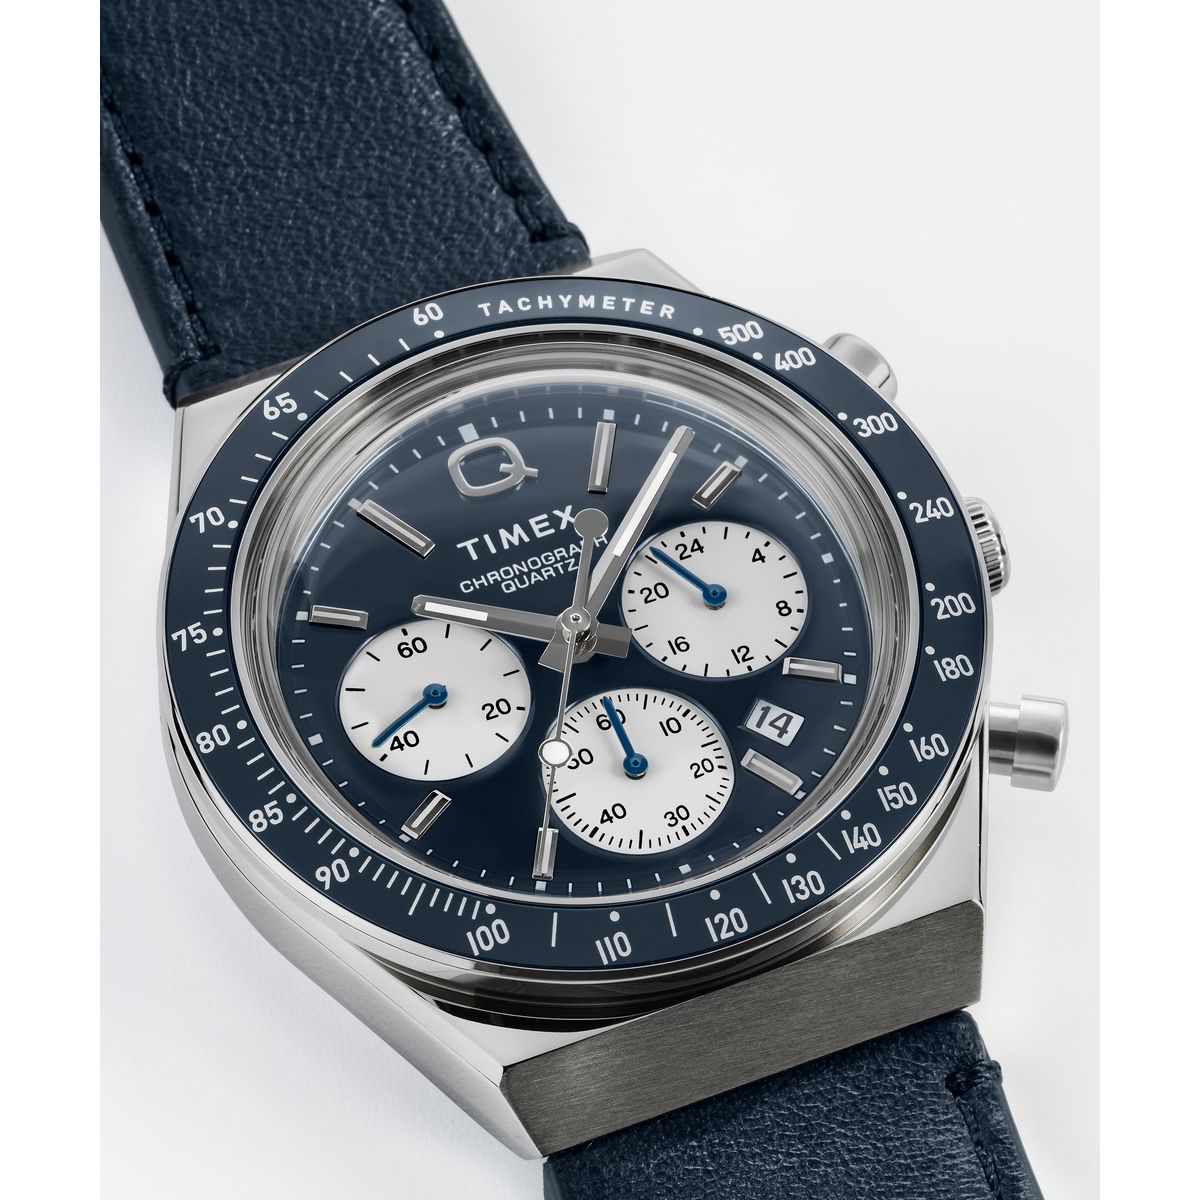 Q Timex Chronograph 40mm Leather Strap Watch - TW2W51700 | Timex EU